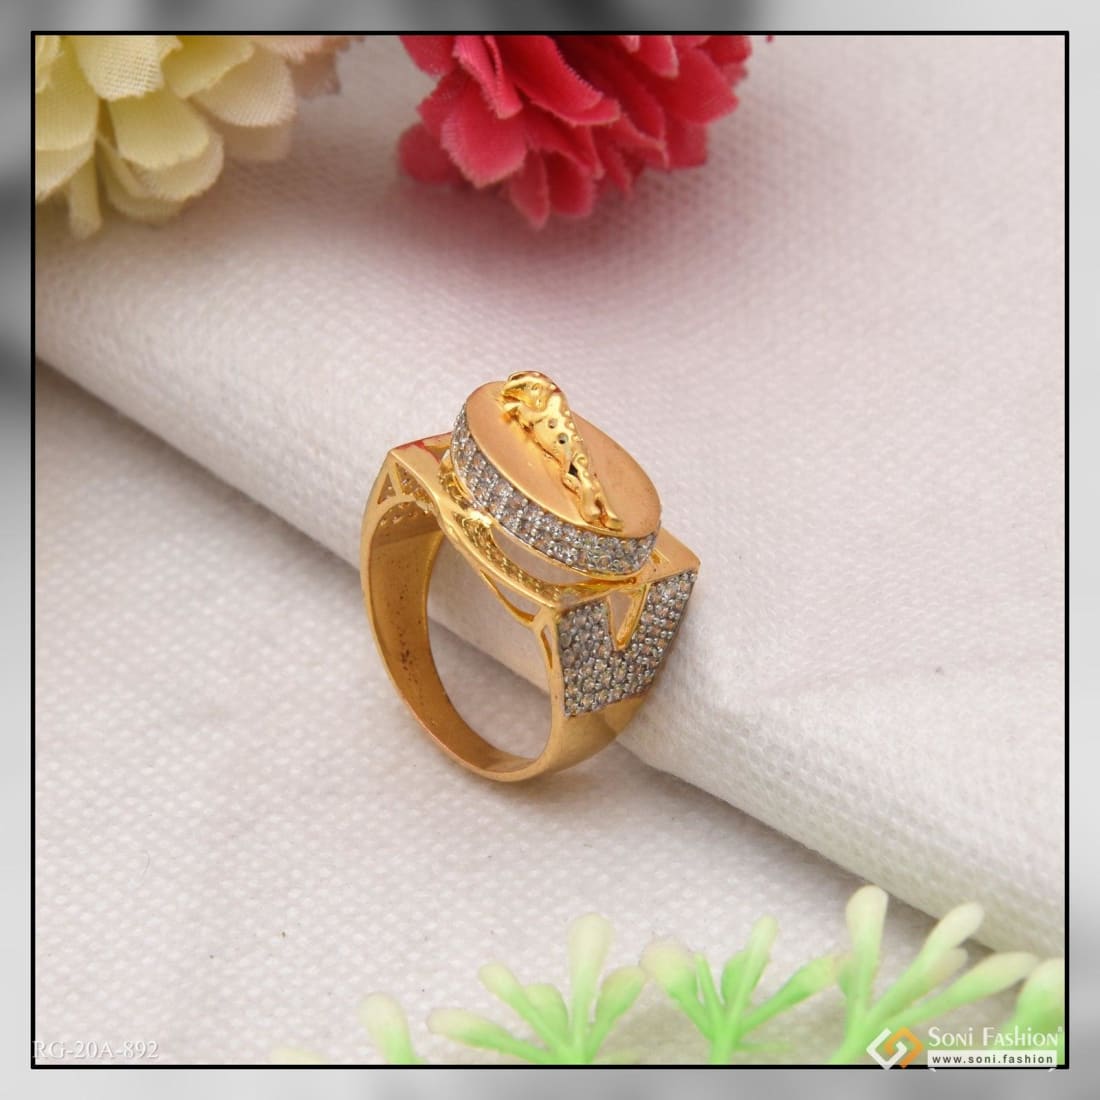 Gold Ring New Design : सोने की अंगूठी की है जबरदस्त नई डिजाइन, महिलाओं को  आएंगे खूब पसंद ! - Uprising Bihar